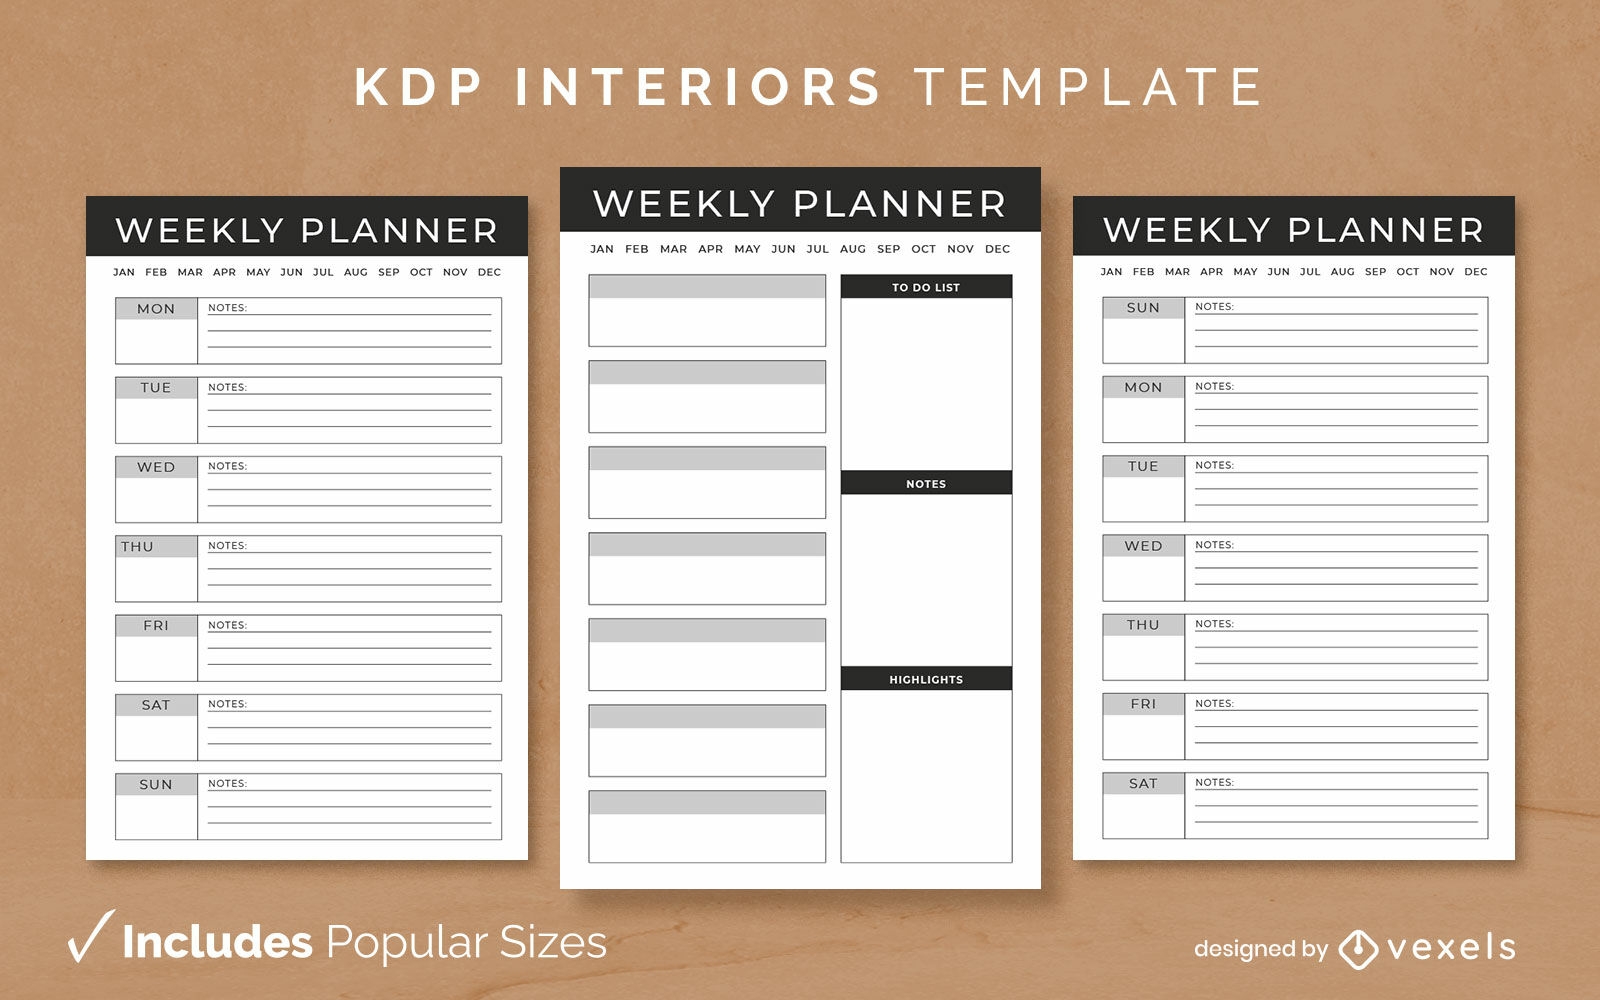 Design de modelo de interior KDP planejador semanal sem data